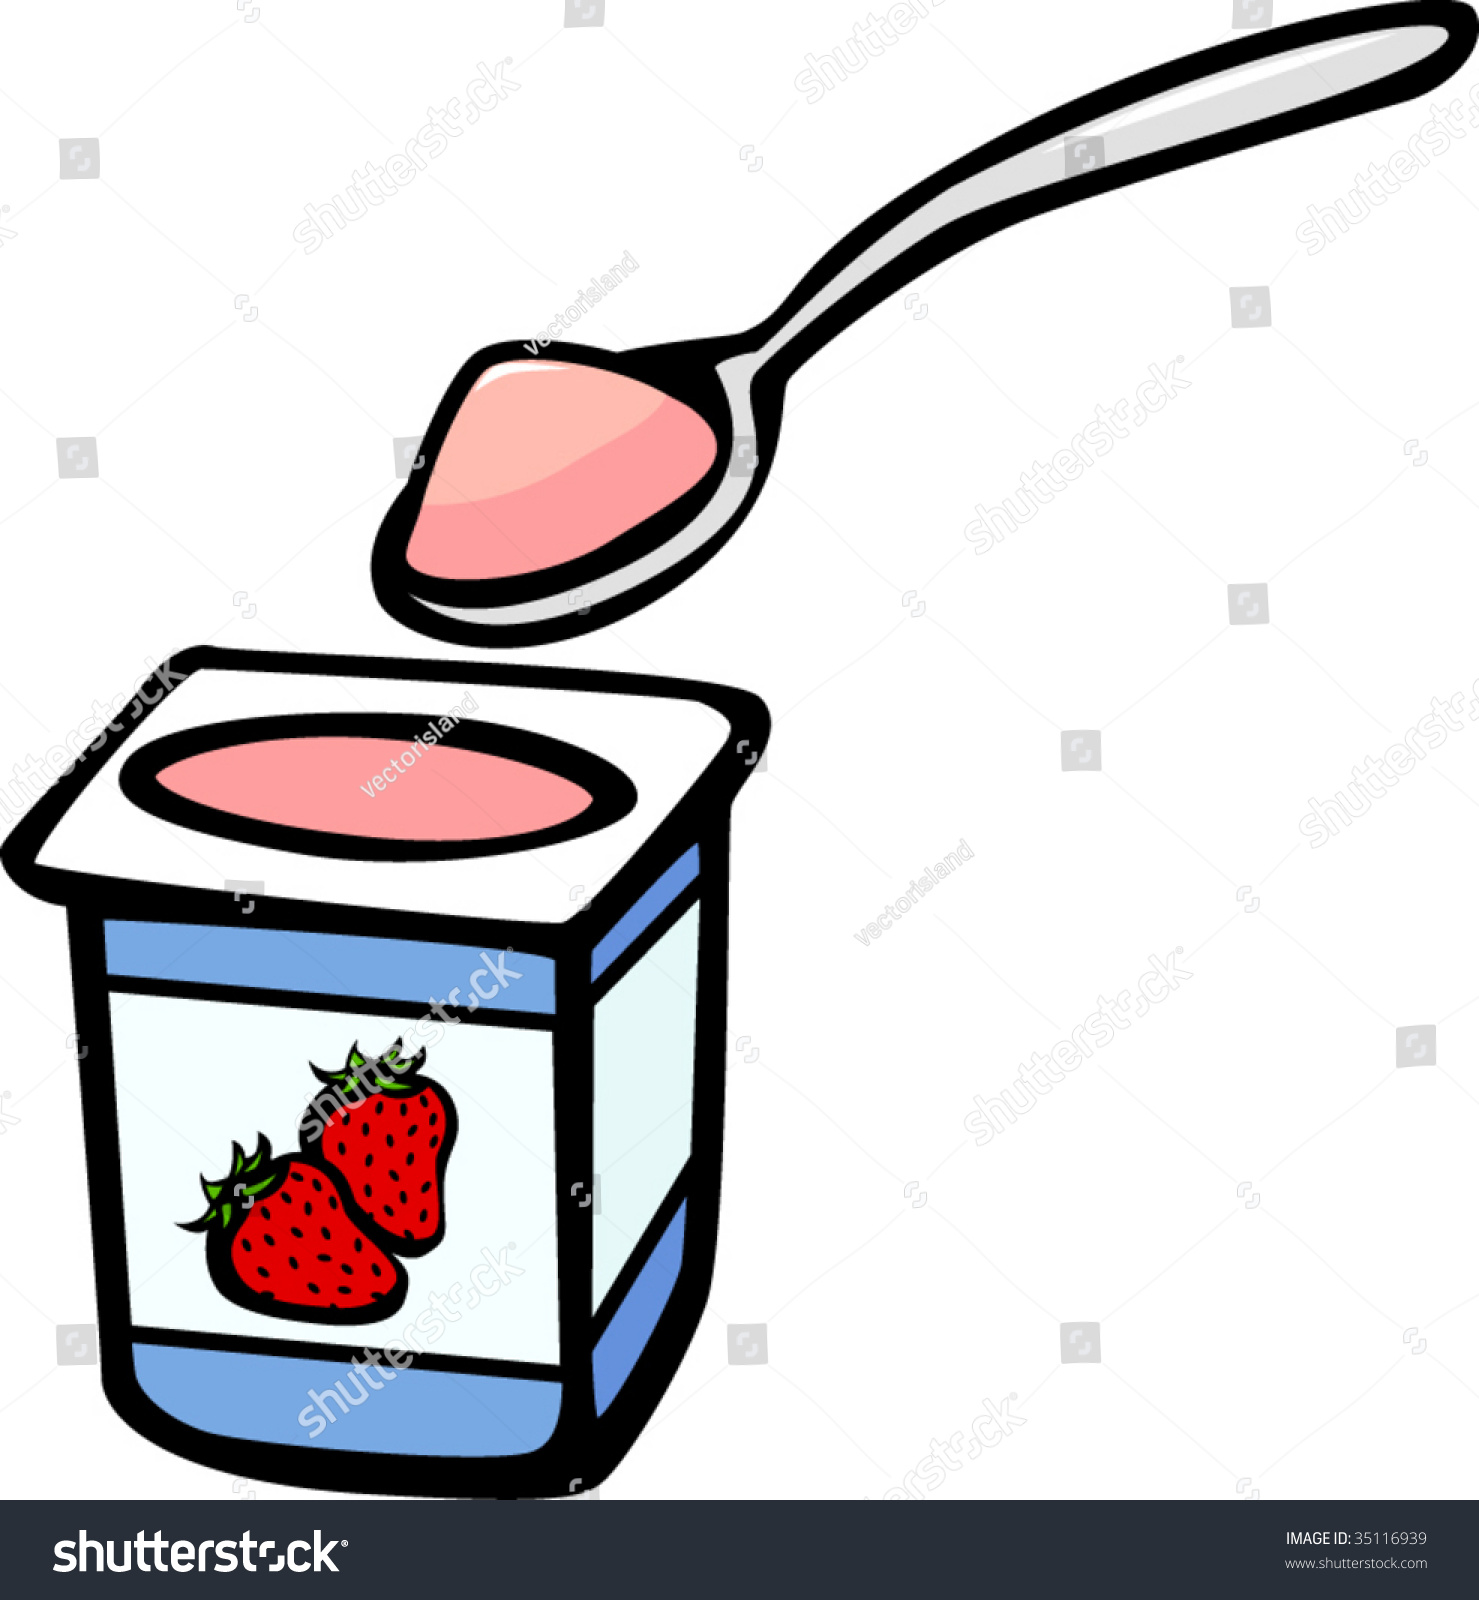 clipart yogurt - photo #36